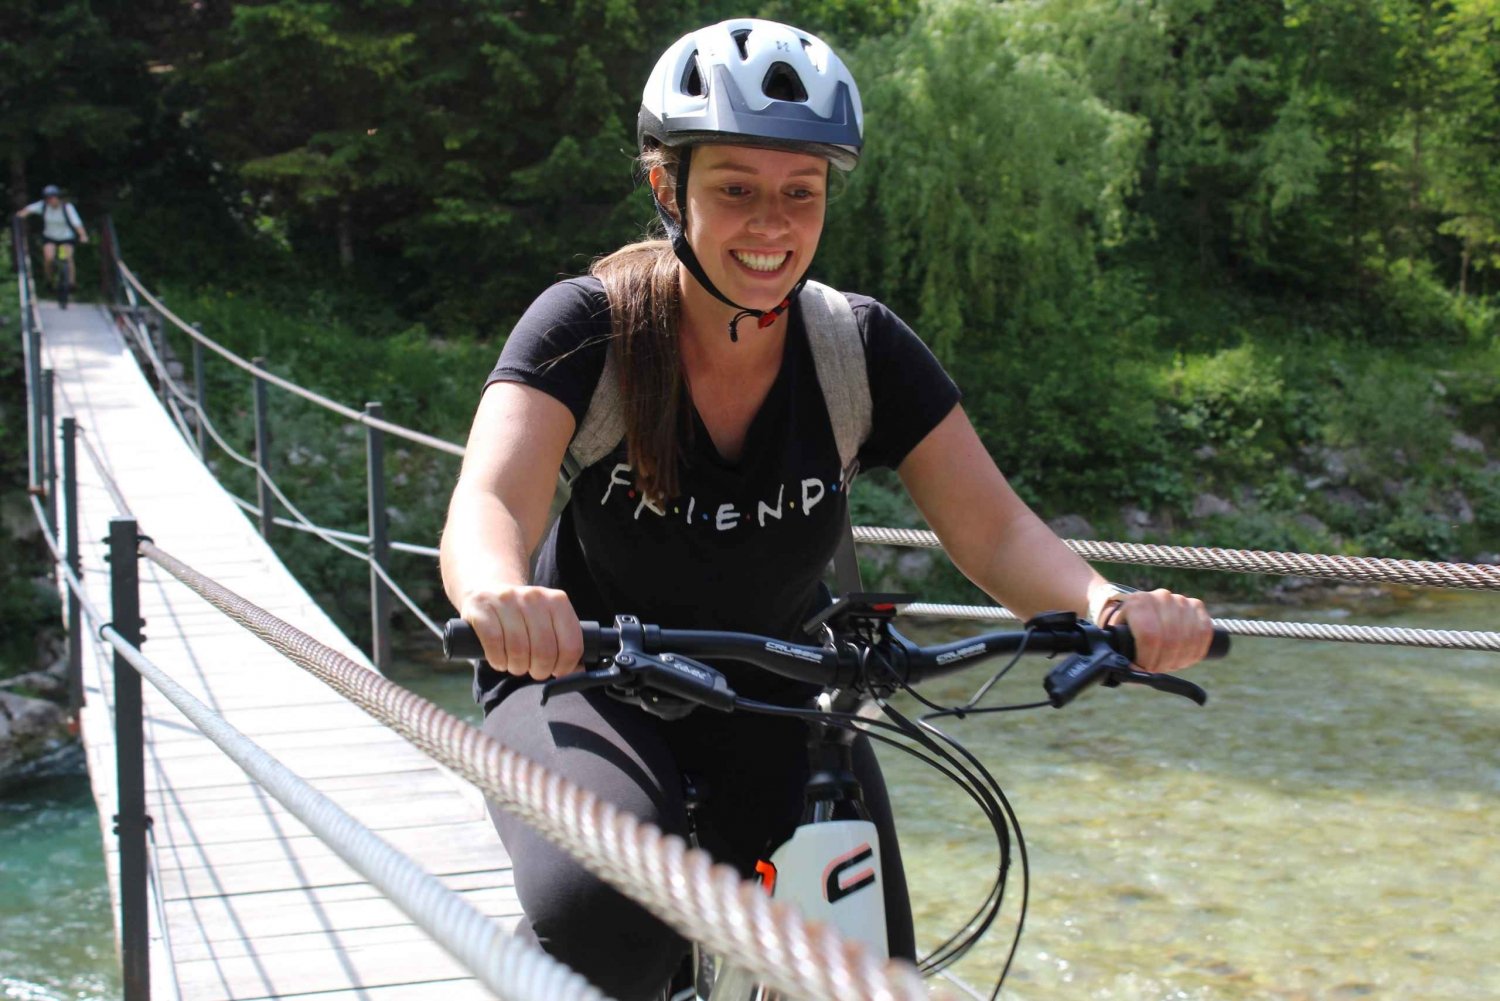 Elcykeltur i Soča-dalen: Den ultimata upptäcktsresan